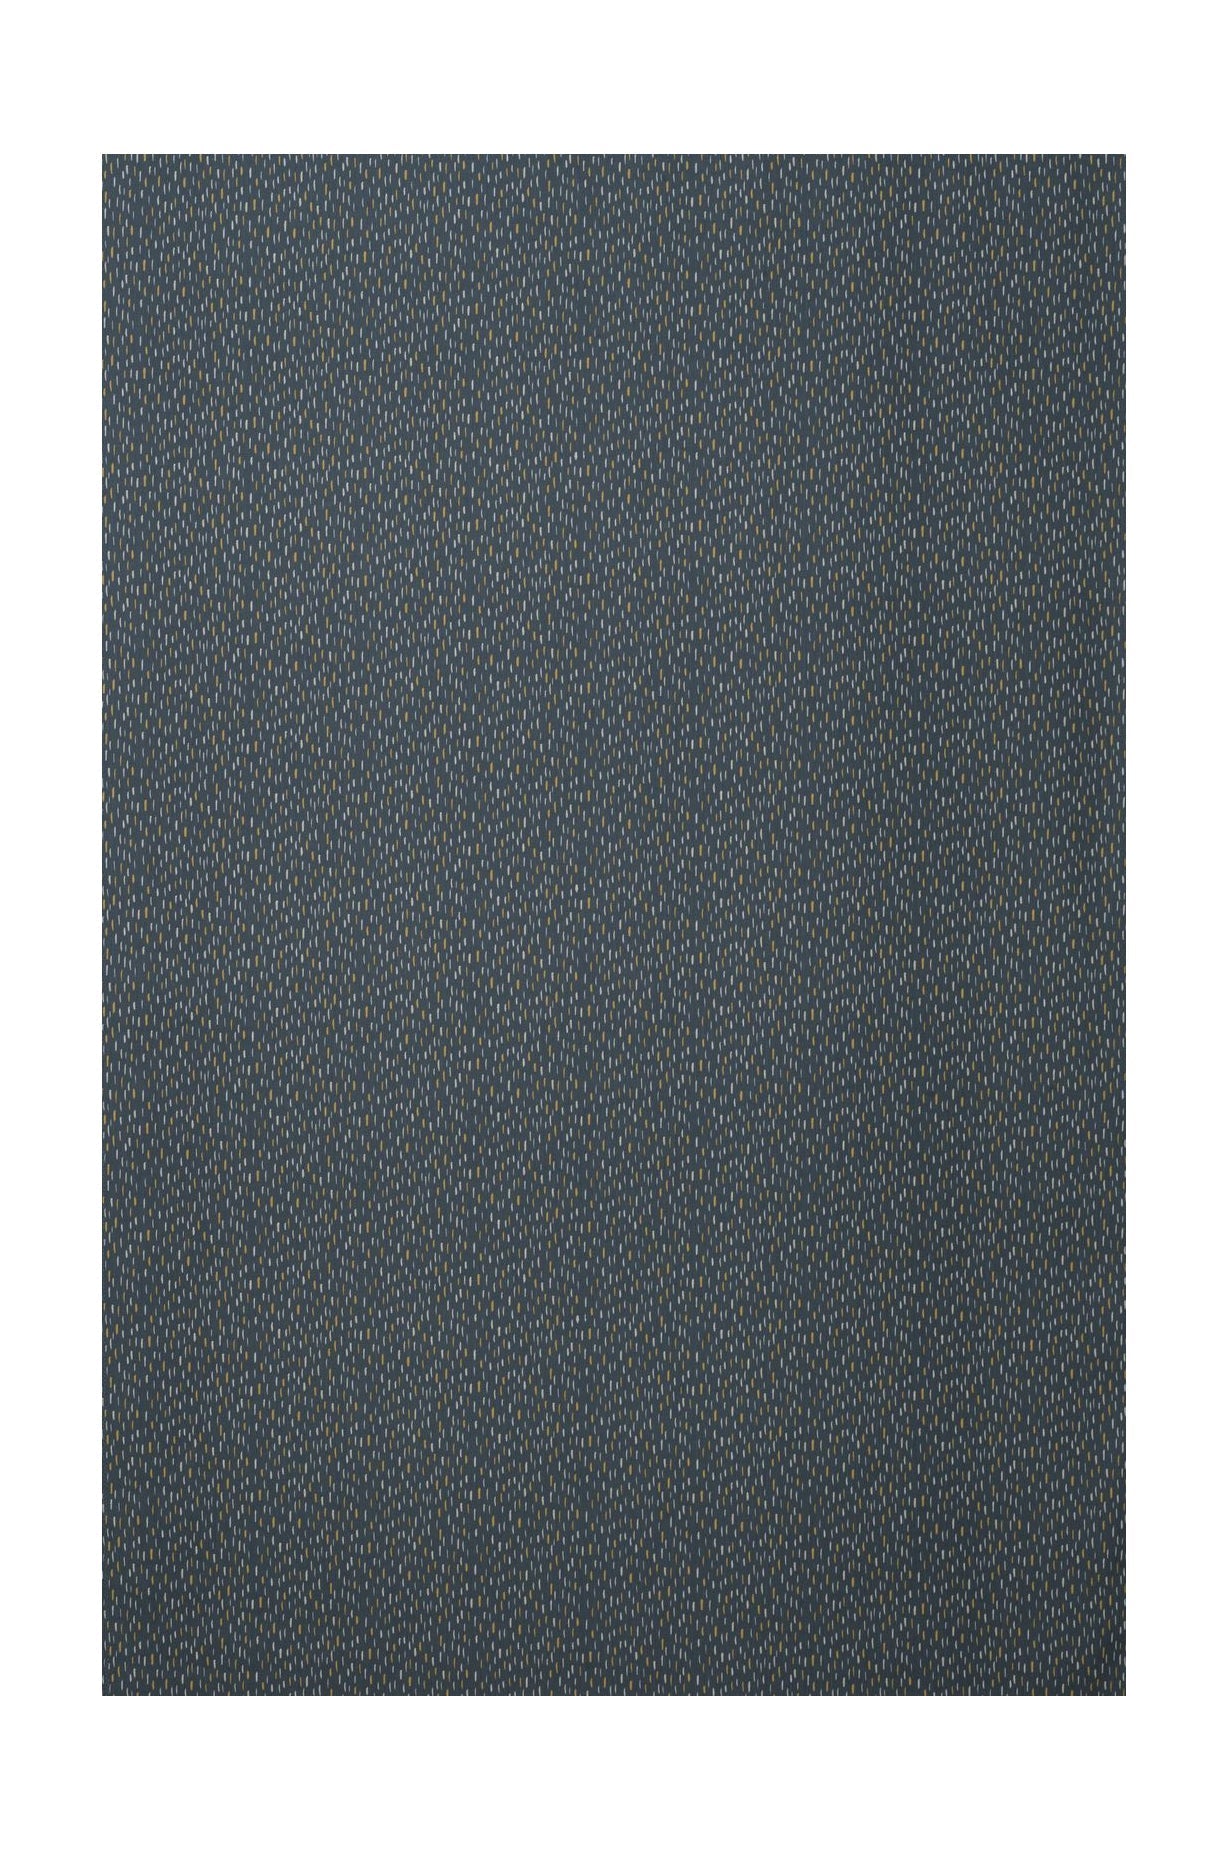 Szerokość tkaniny Spira Art 150 cm (cena za metr), niebieski